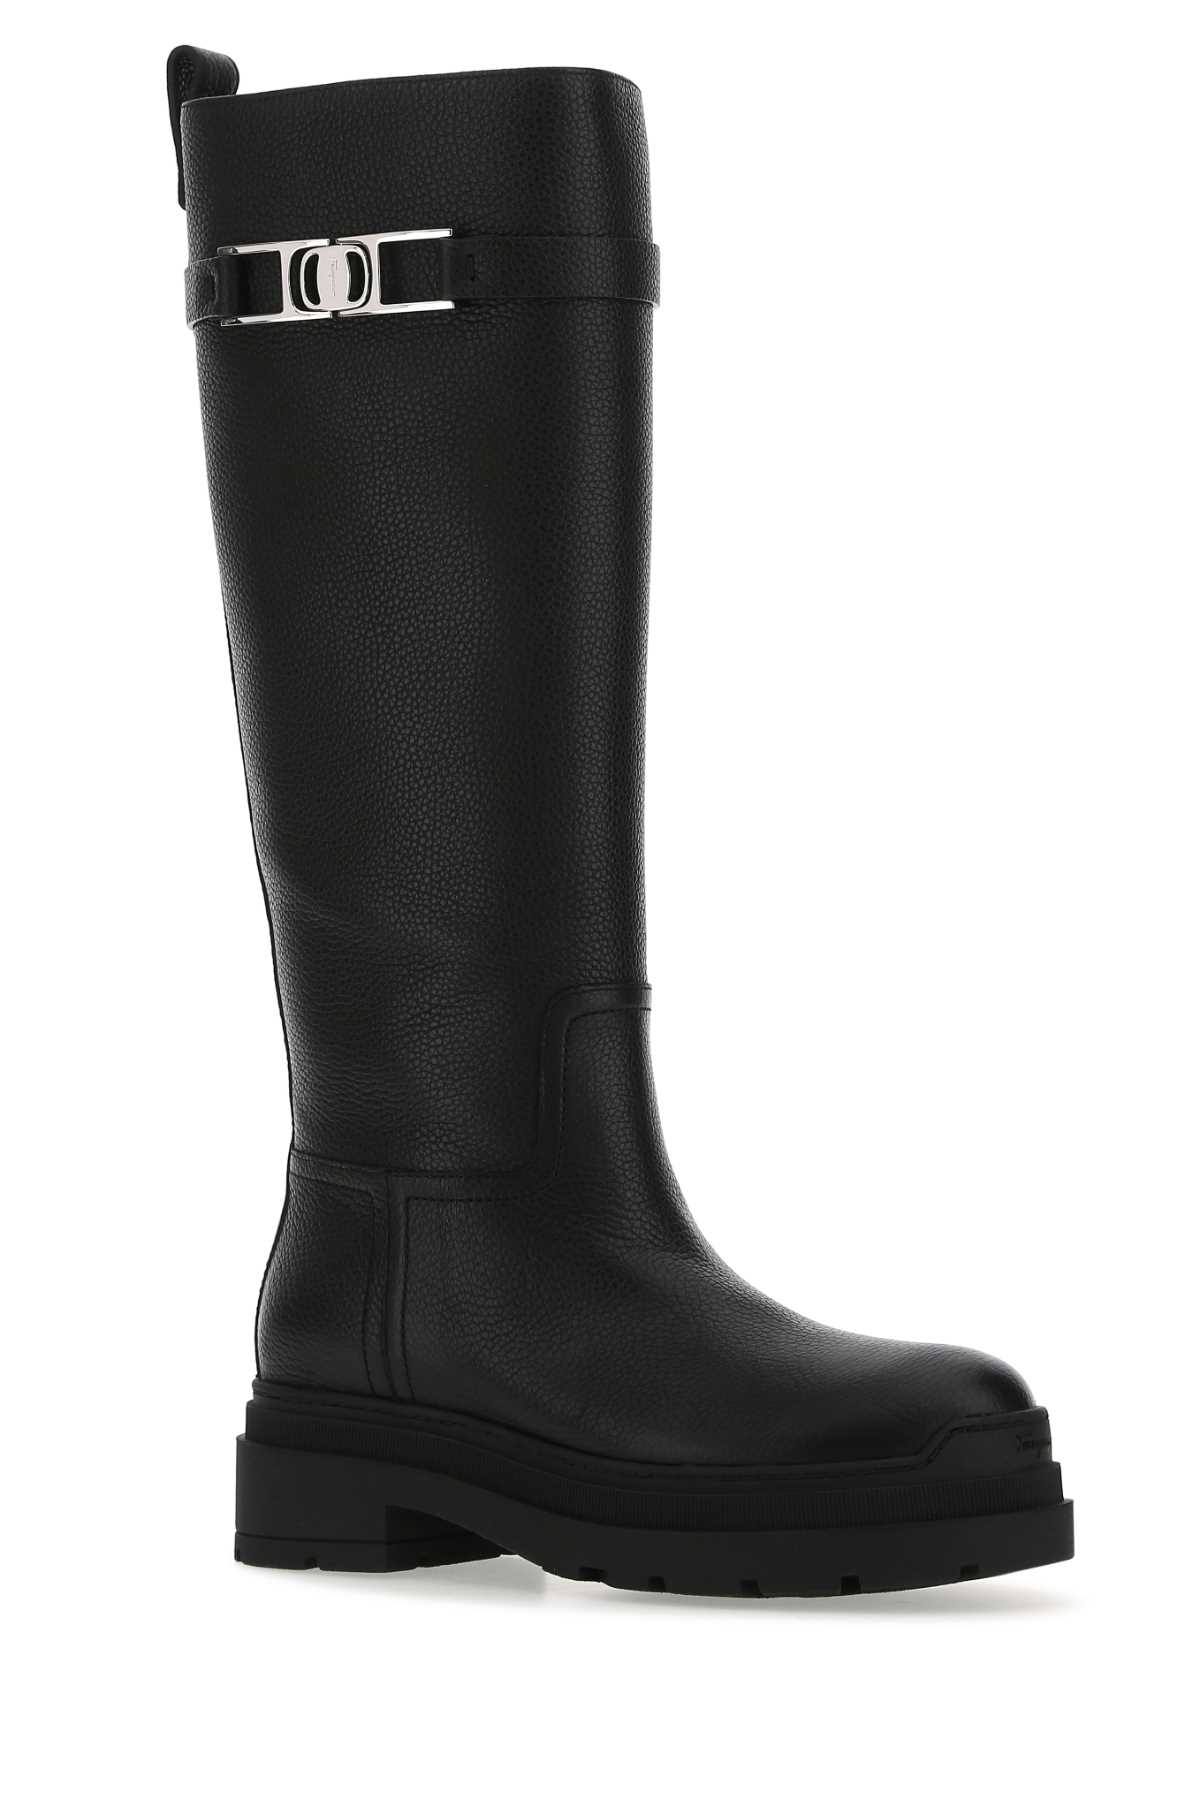 Ferragamo Black Leather Ryder Boots In Nernerner